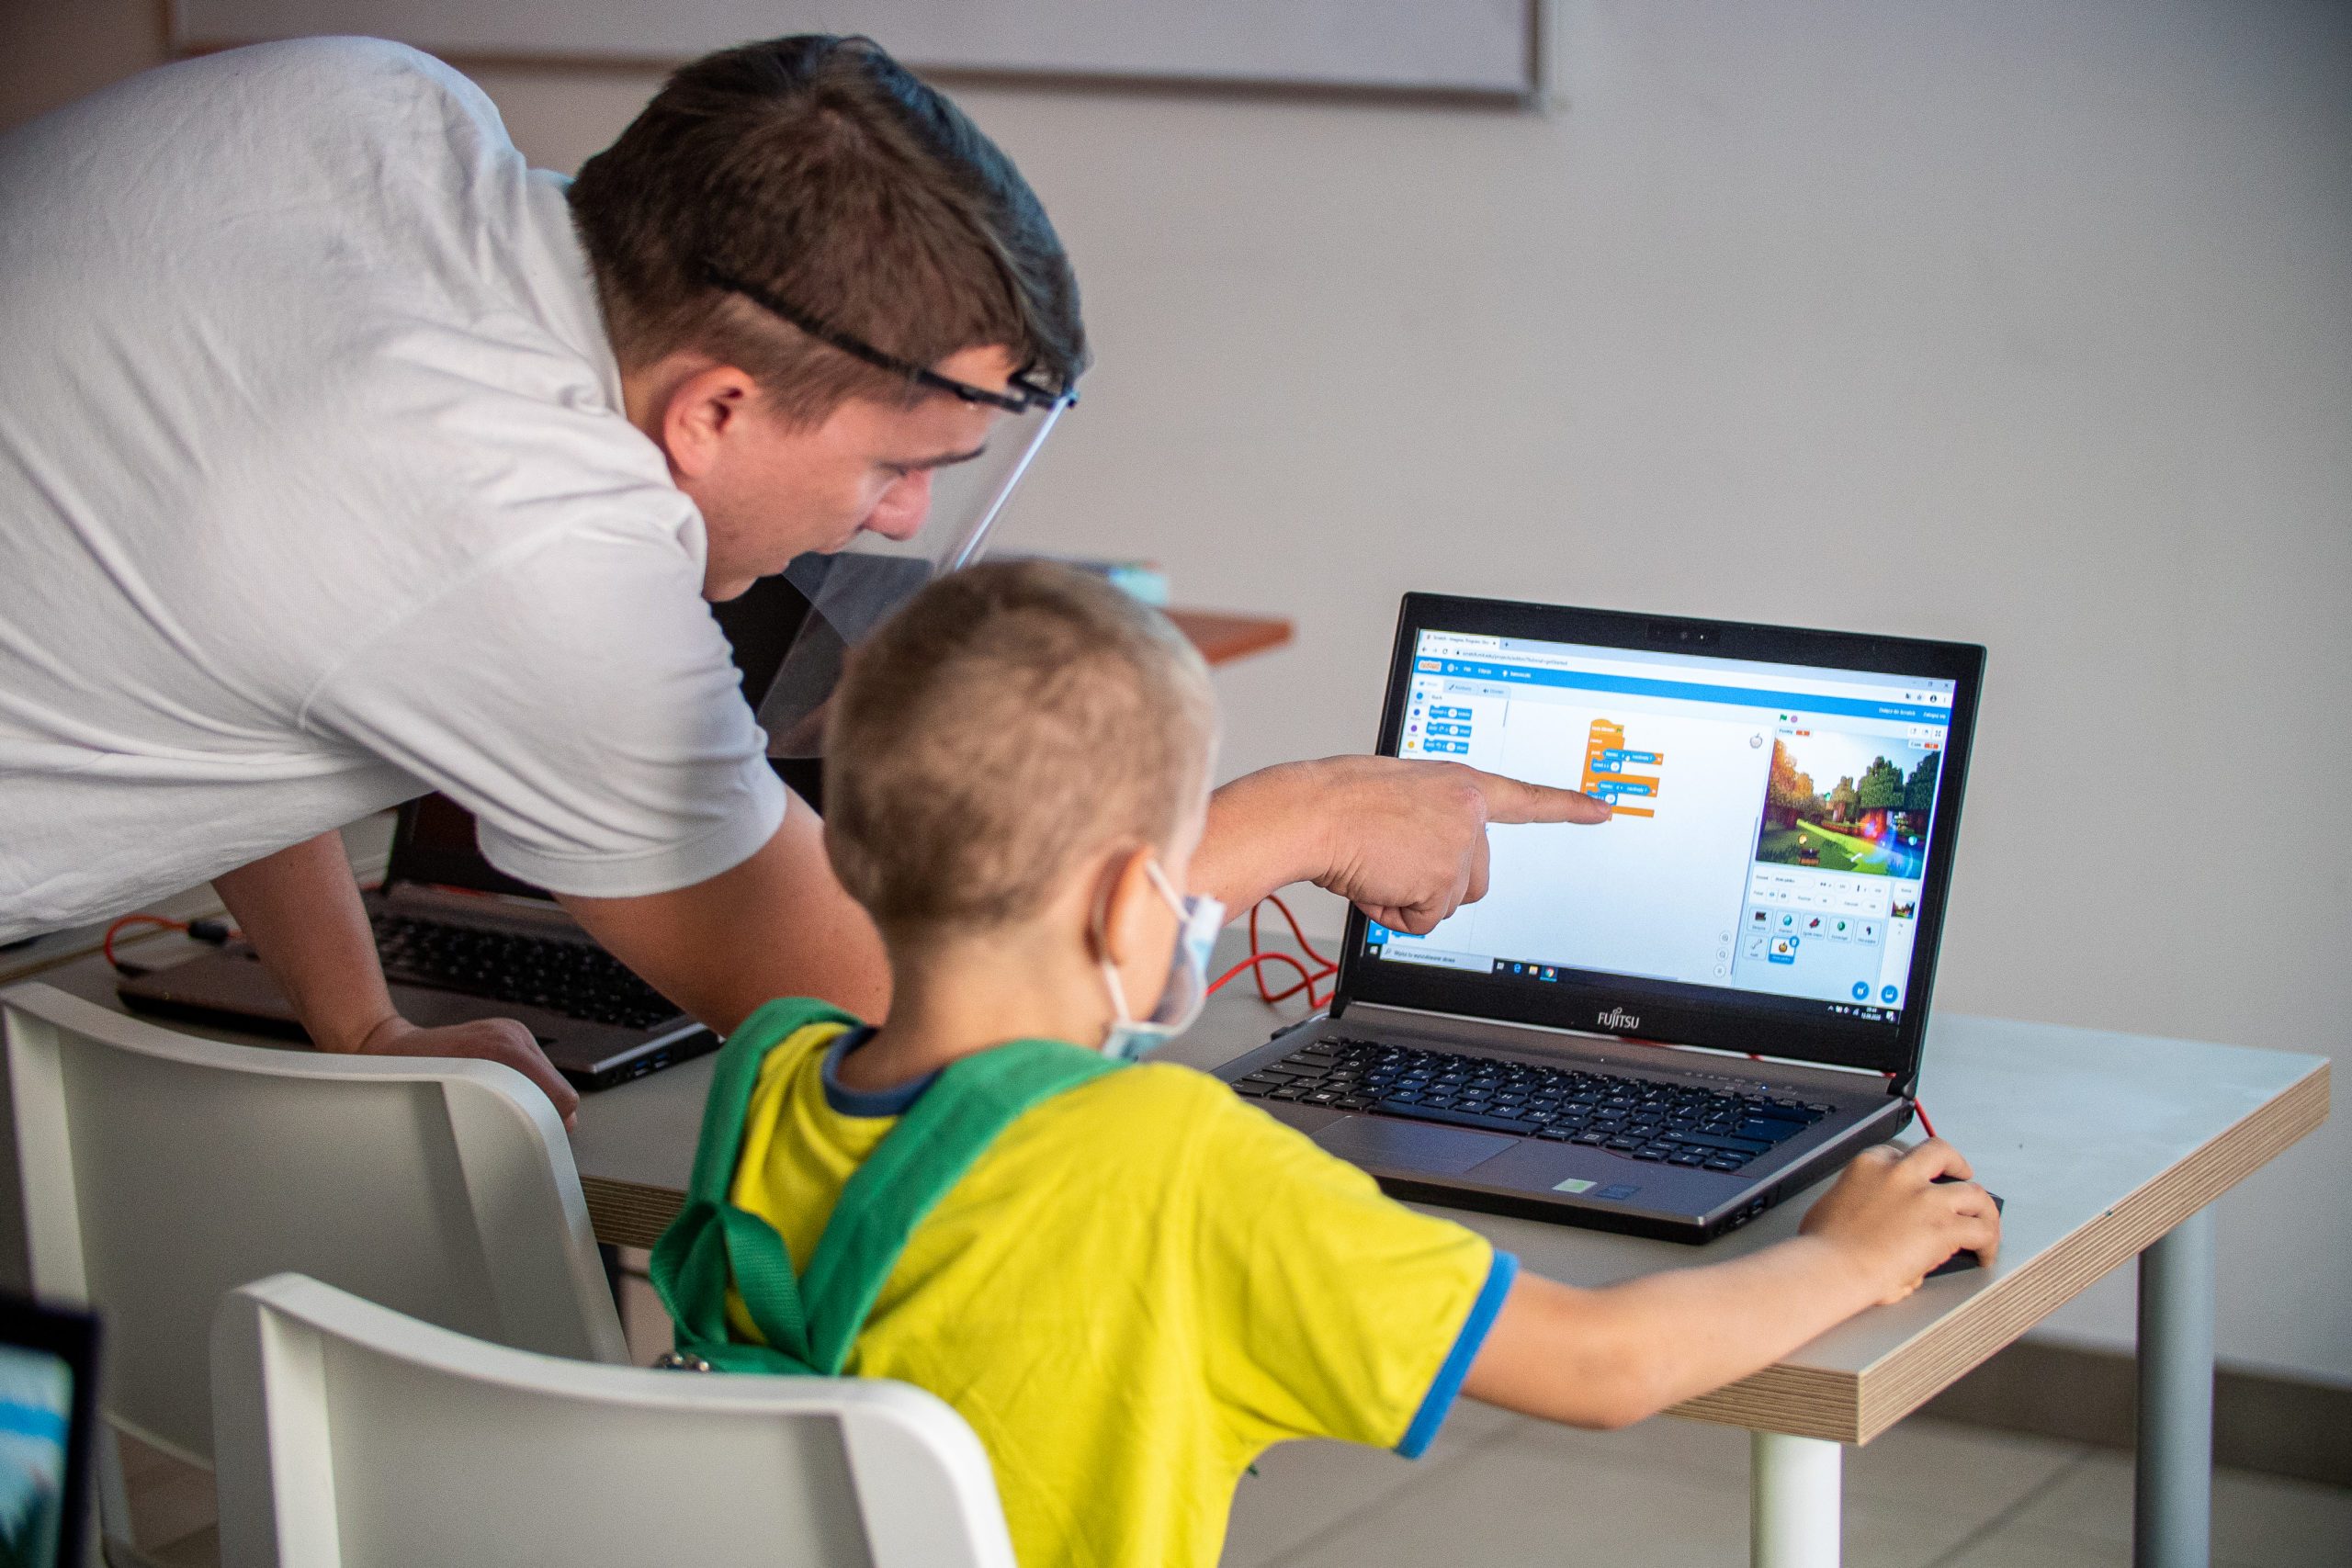 prowadzący pokazuje na ekranie chłopcu jak ma ustawiac kafelki w Scratch